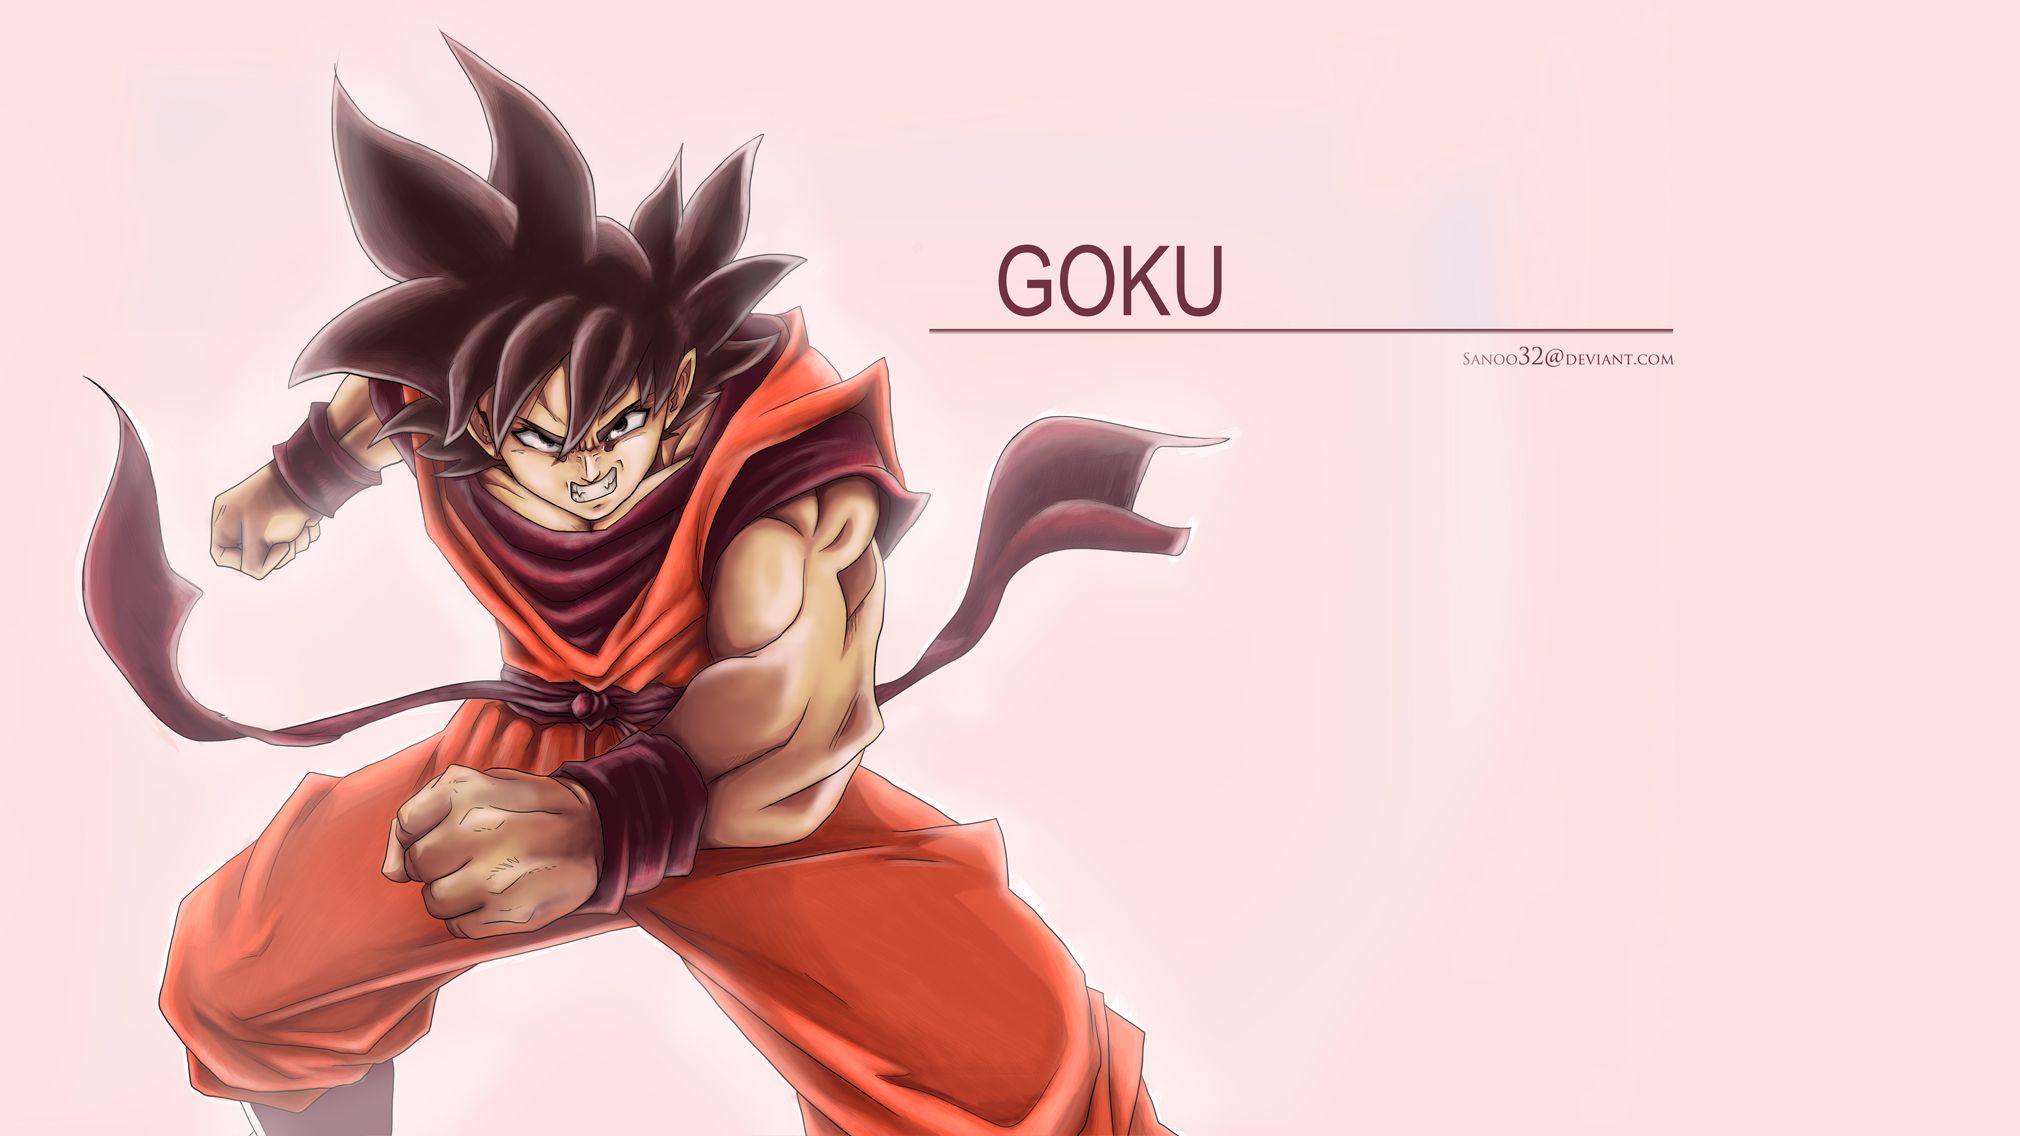 Goku Best Wallpaper images